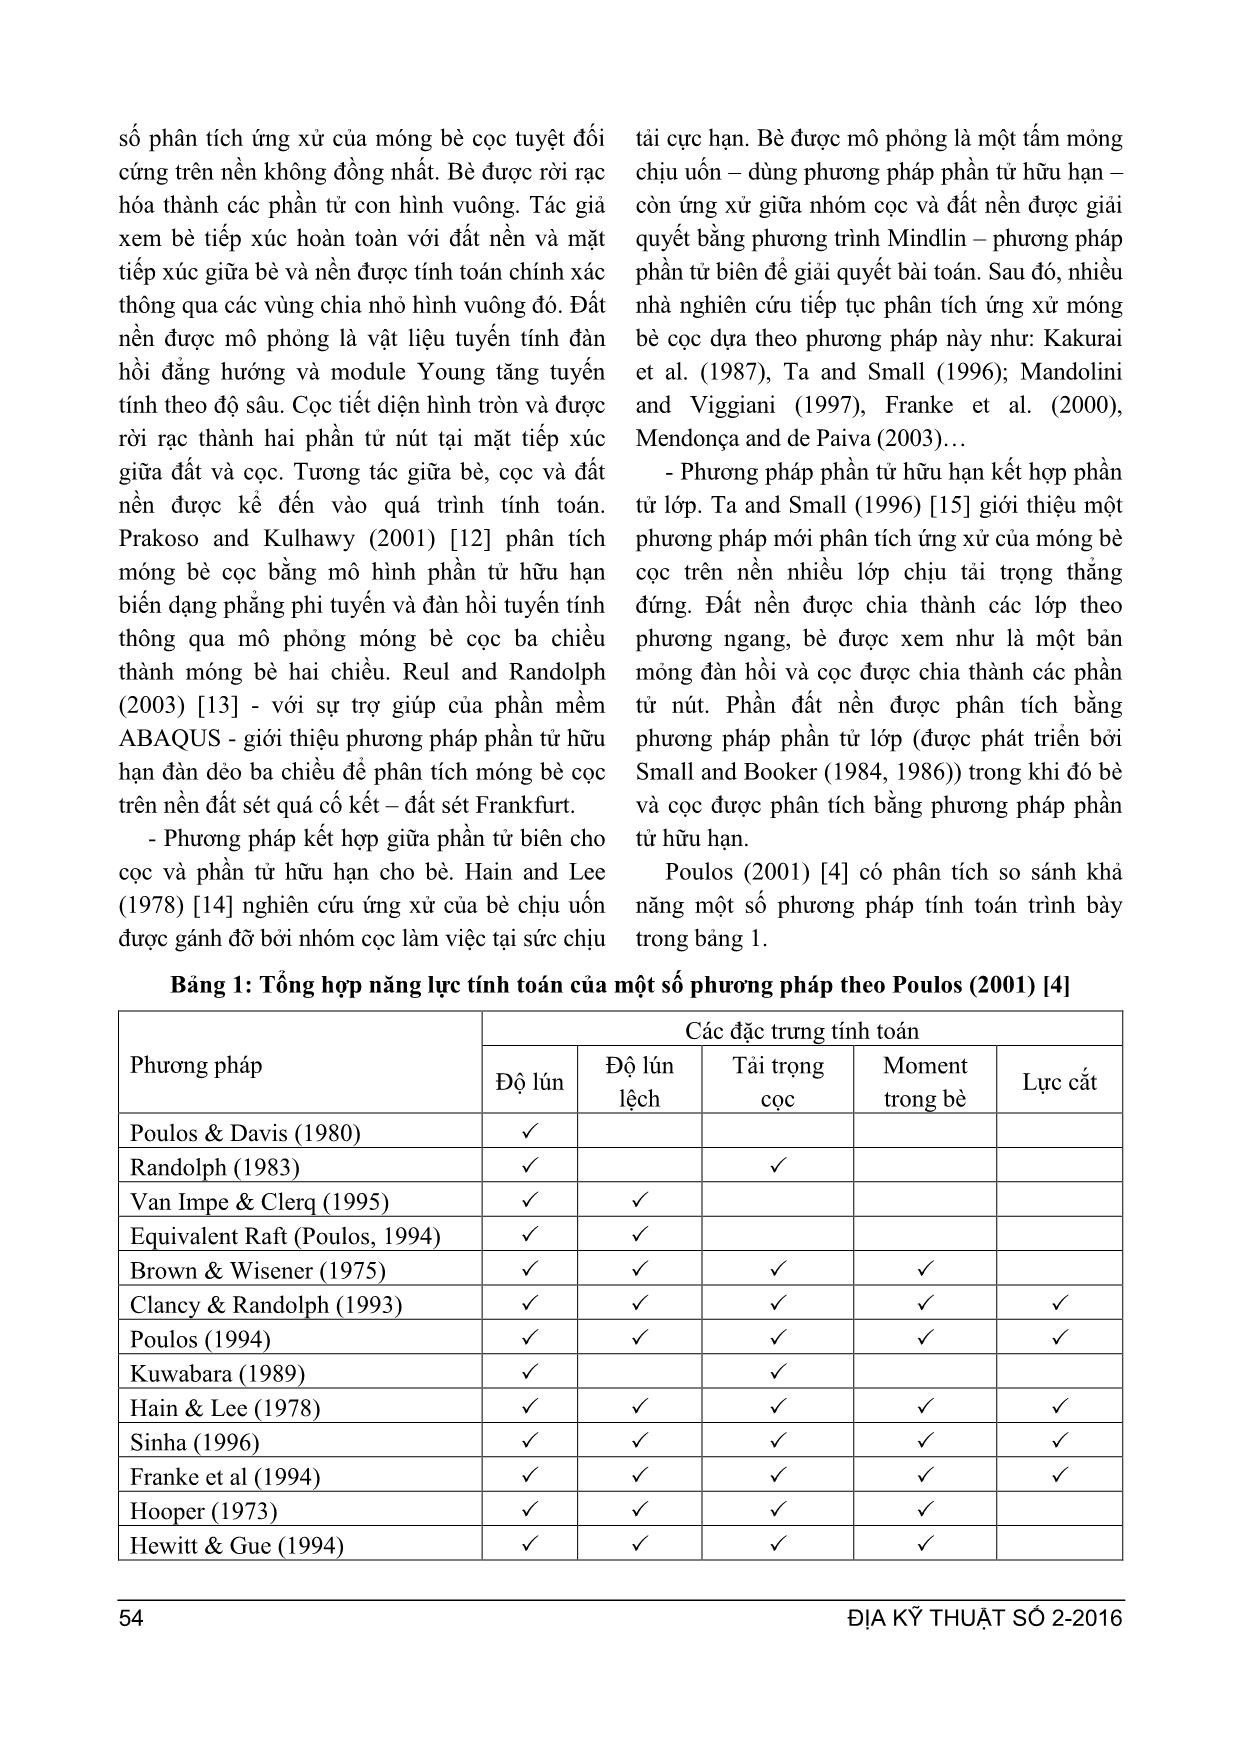 So sánh một số phương pháp phân tích móng bè cọ trang 3